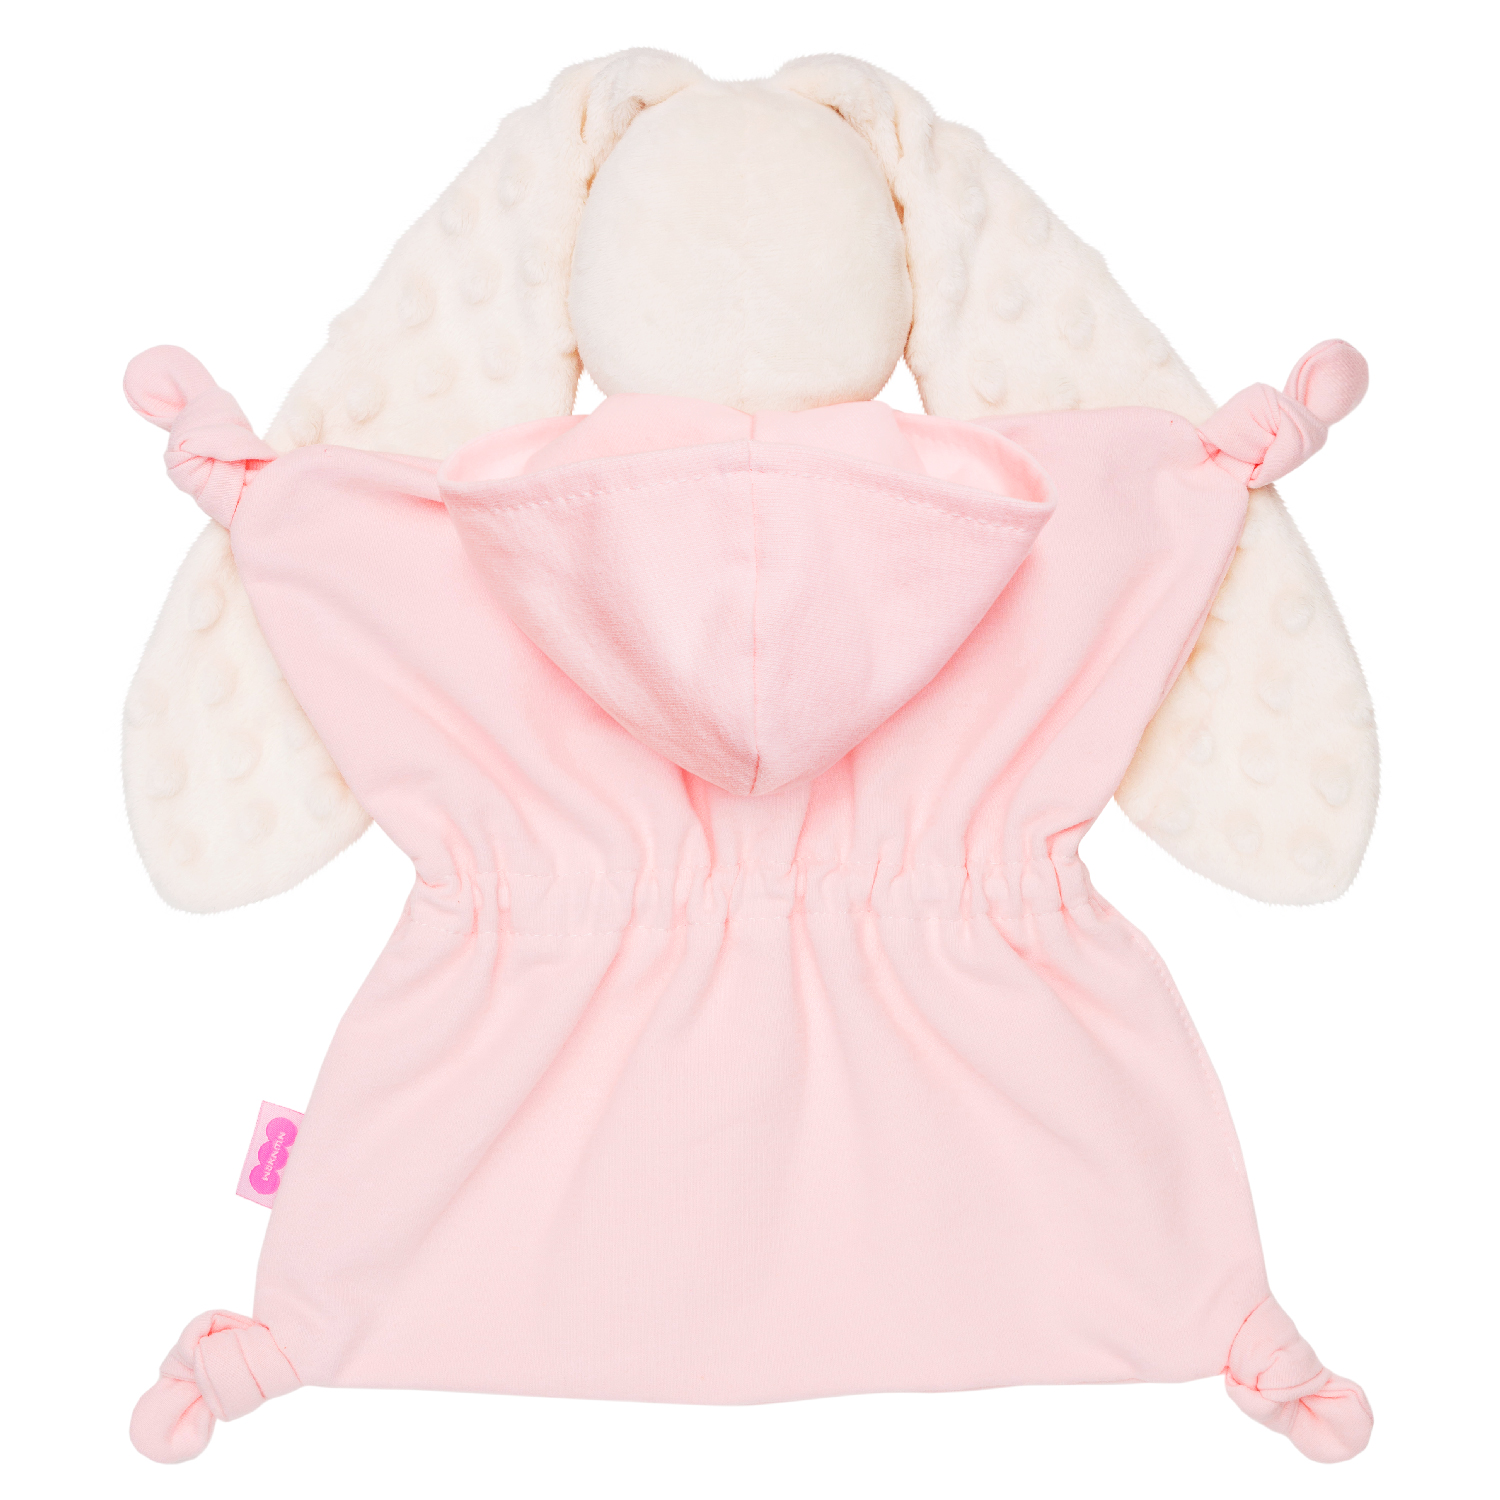 Stuffed Myakishi Toy (Bunny Sport Comforter Souffle)